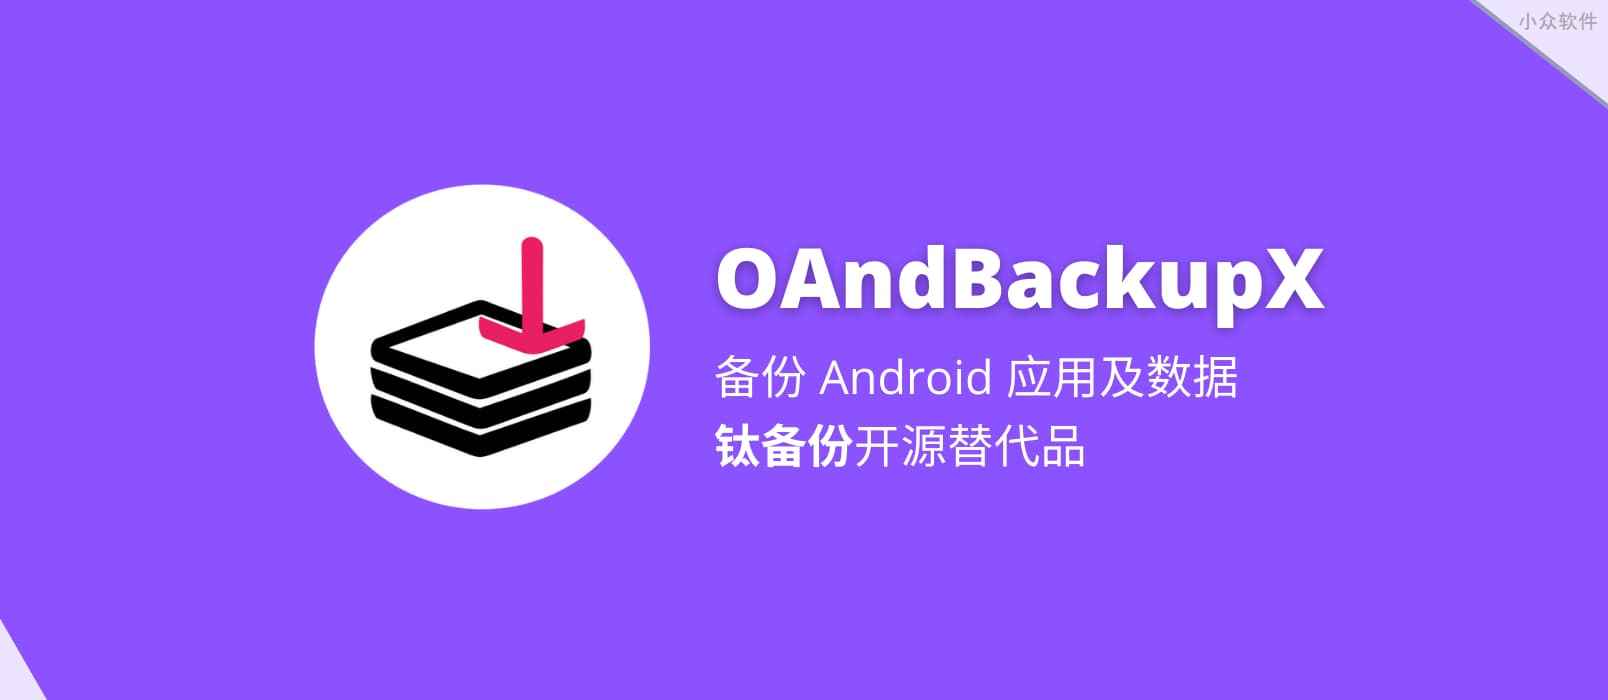 OAndBackupX - 钛备份开源替代品，Android 应用数据备份与恢复工具 1